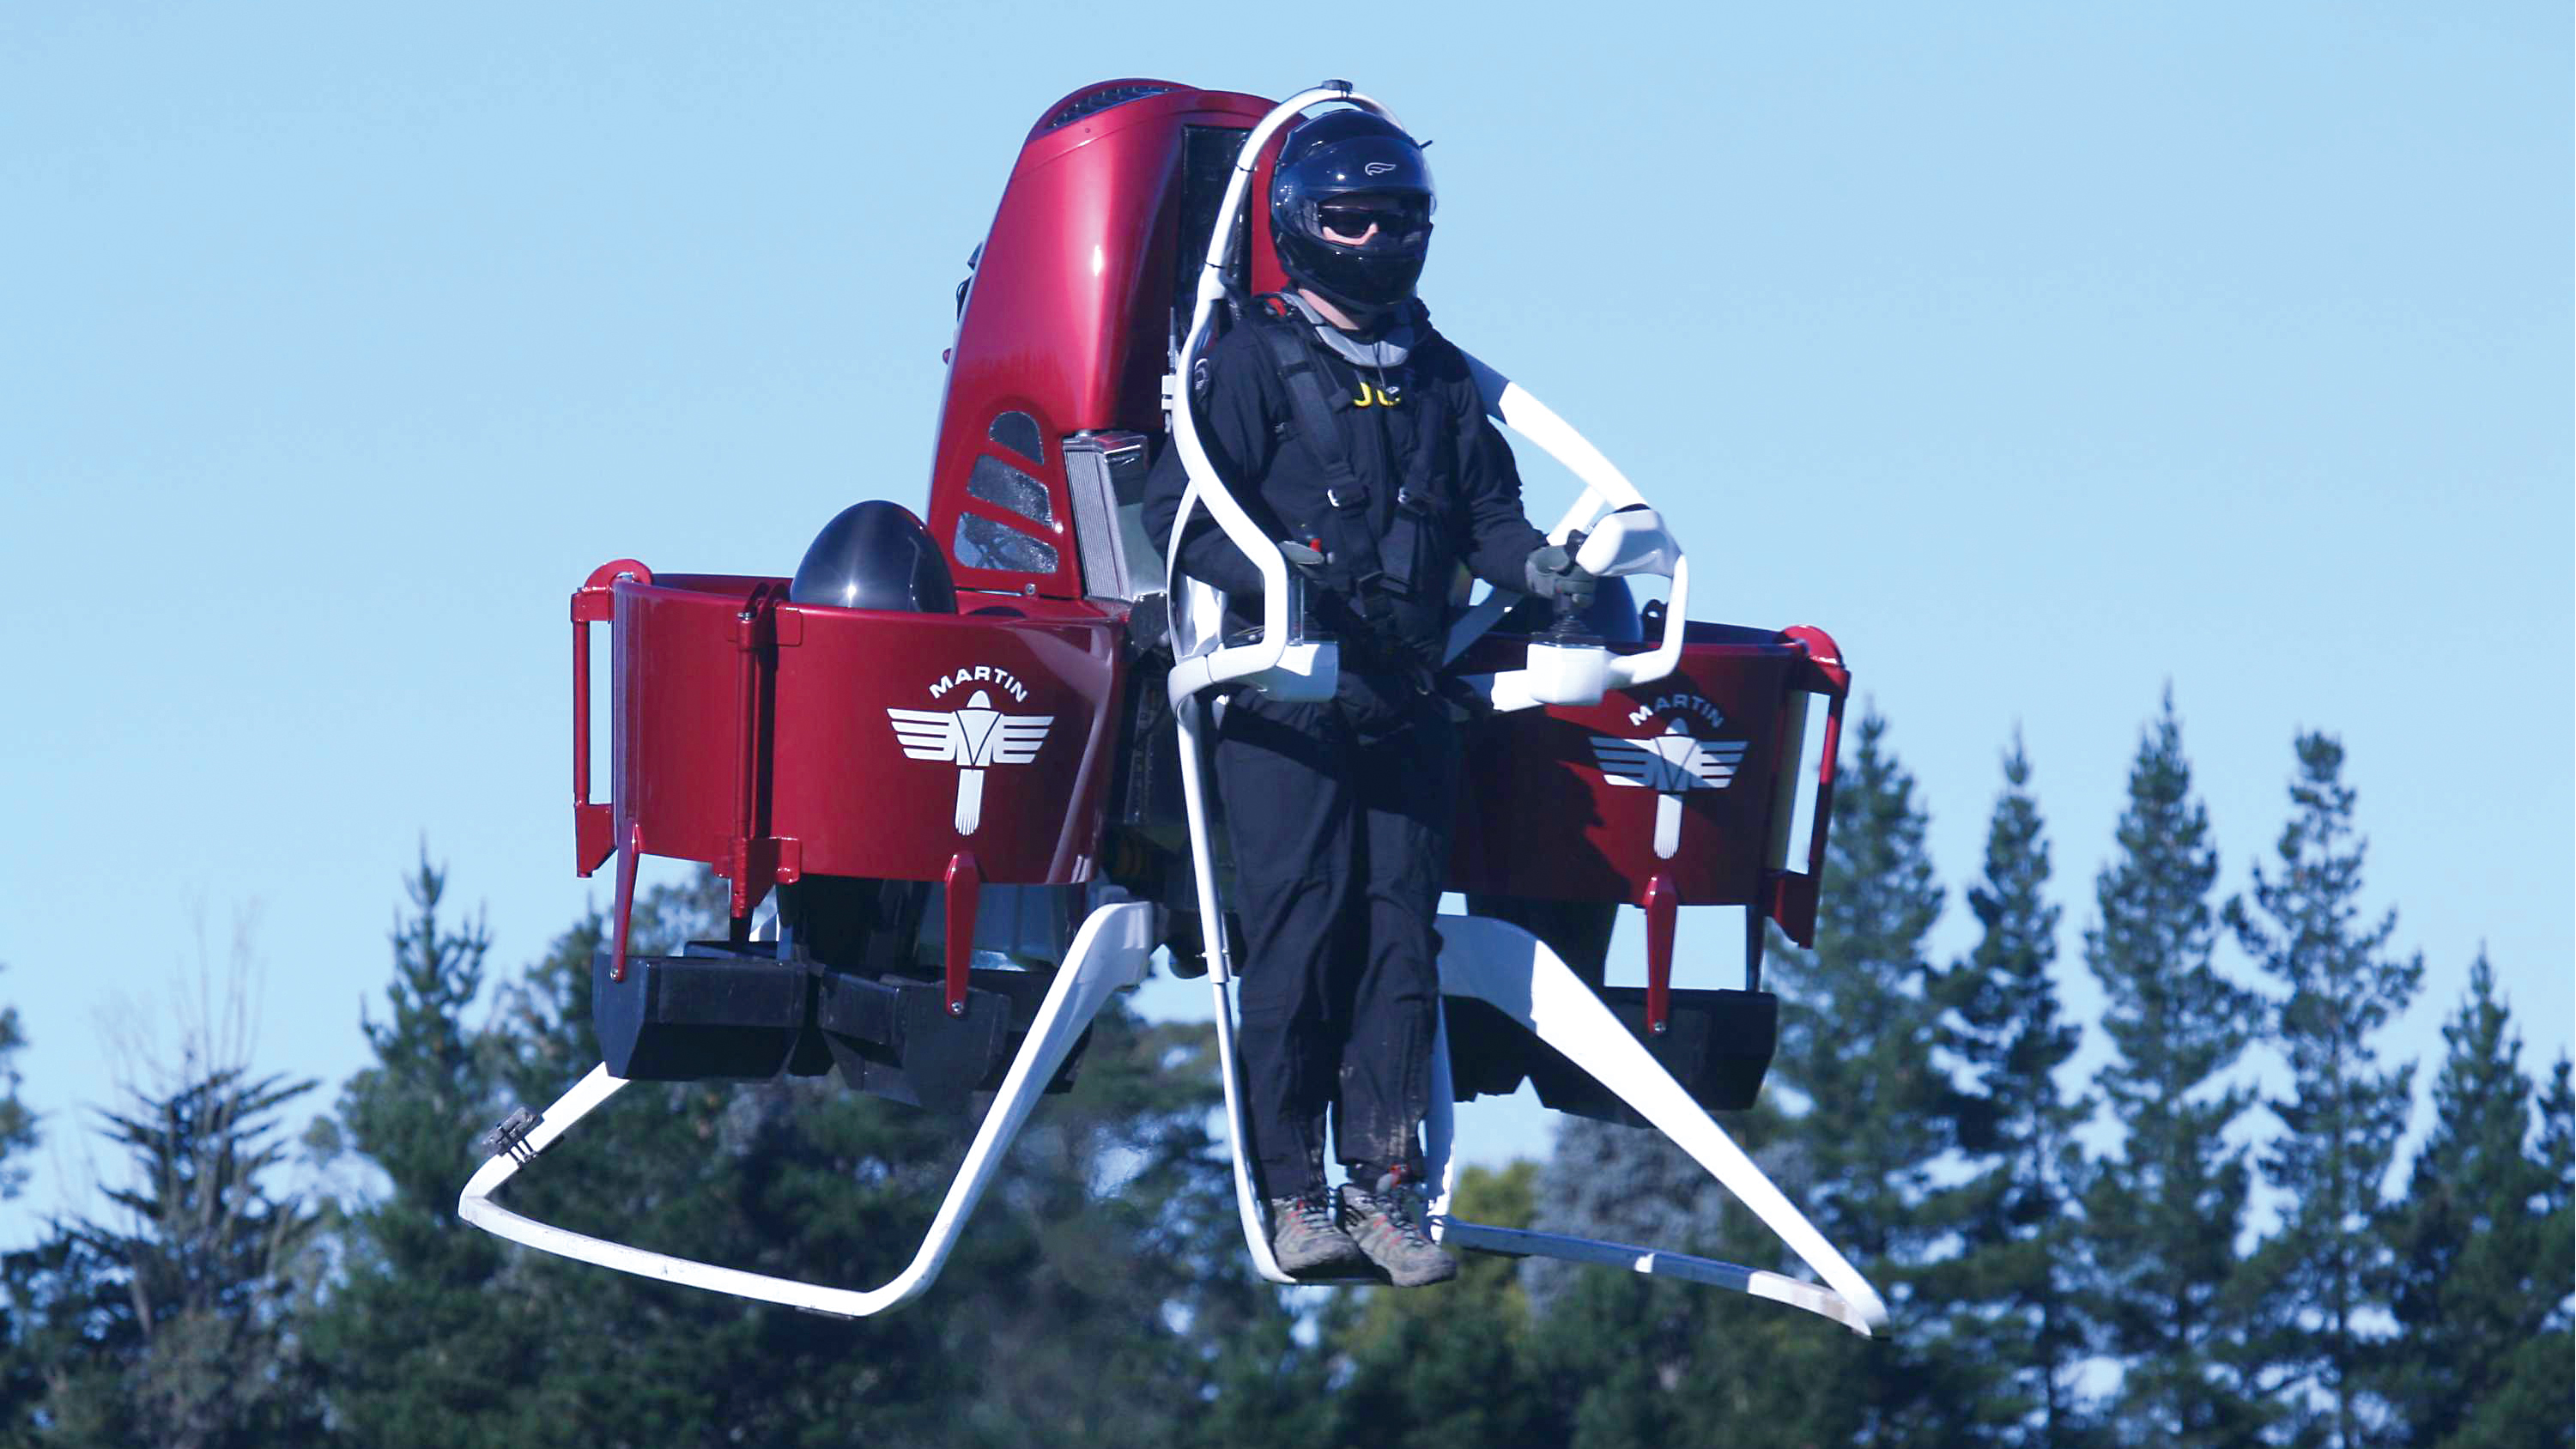 喷气背包是通过动力推进可以让背包的人飞起来的特殊个人飞行器,包含